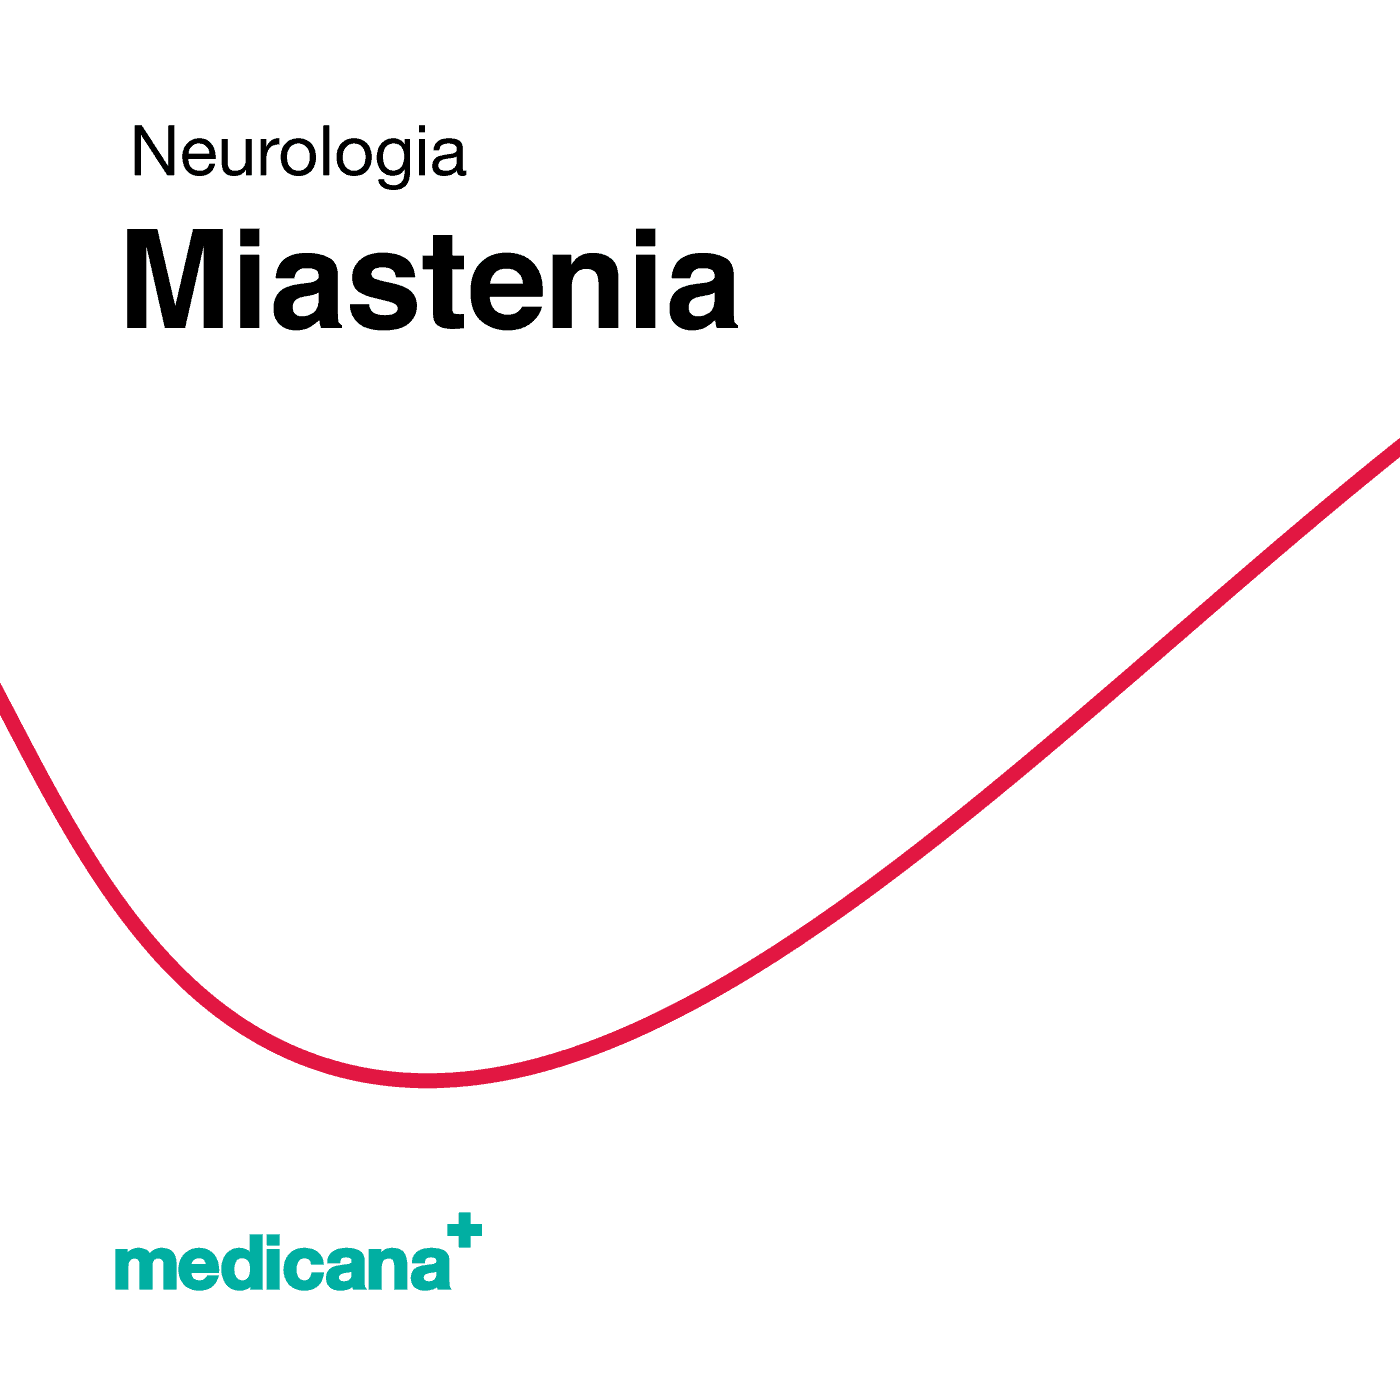 Grafika, białe tło z czerwoną kreską, czarnym napisem Neurologia - Miastenia i logo Medicana Centrum Terapii Medyczna Marihuana w lewym dolnym rogu.